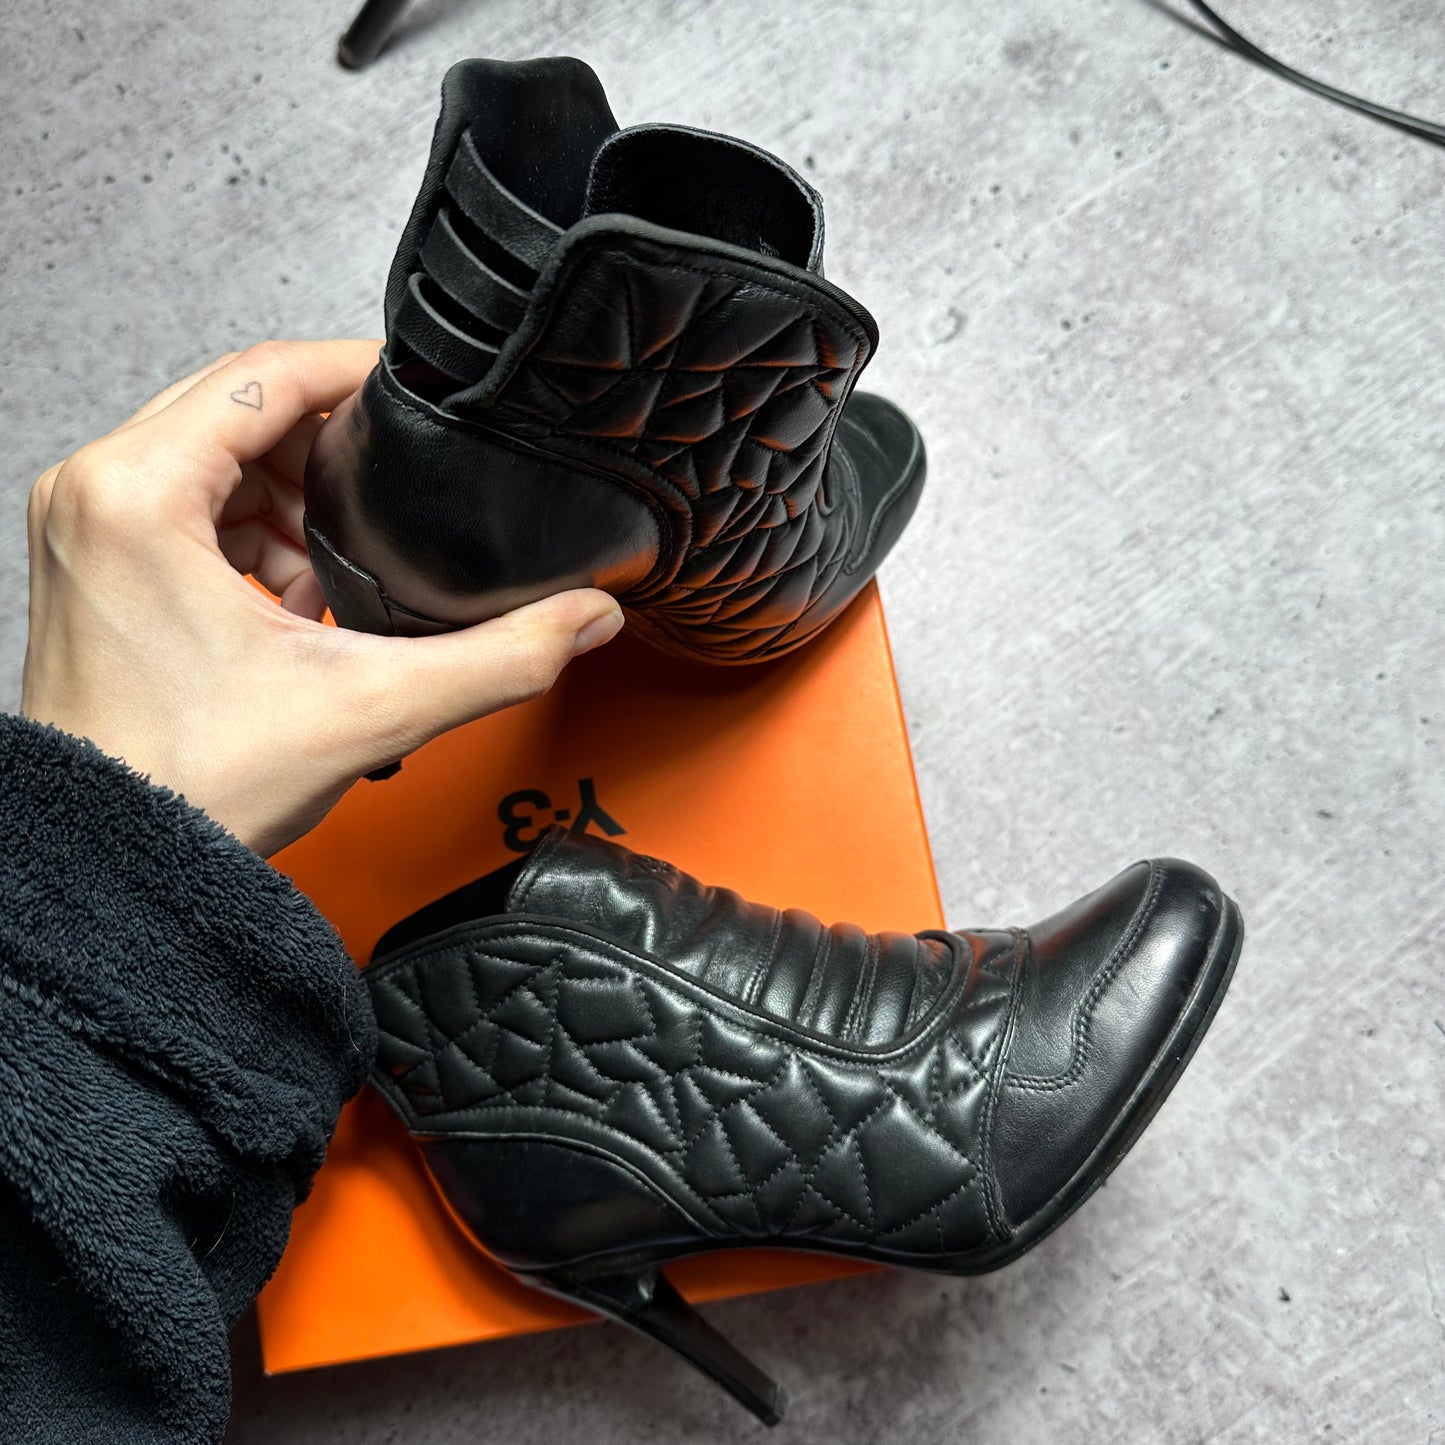 Yohji Yamamoto Adidas Y3 Leather Boots 37.5/38.5